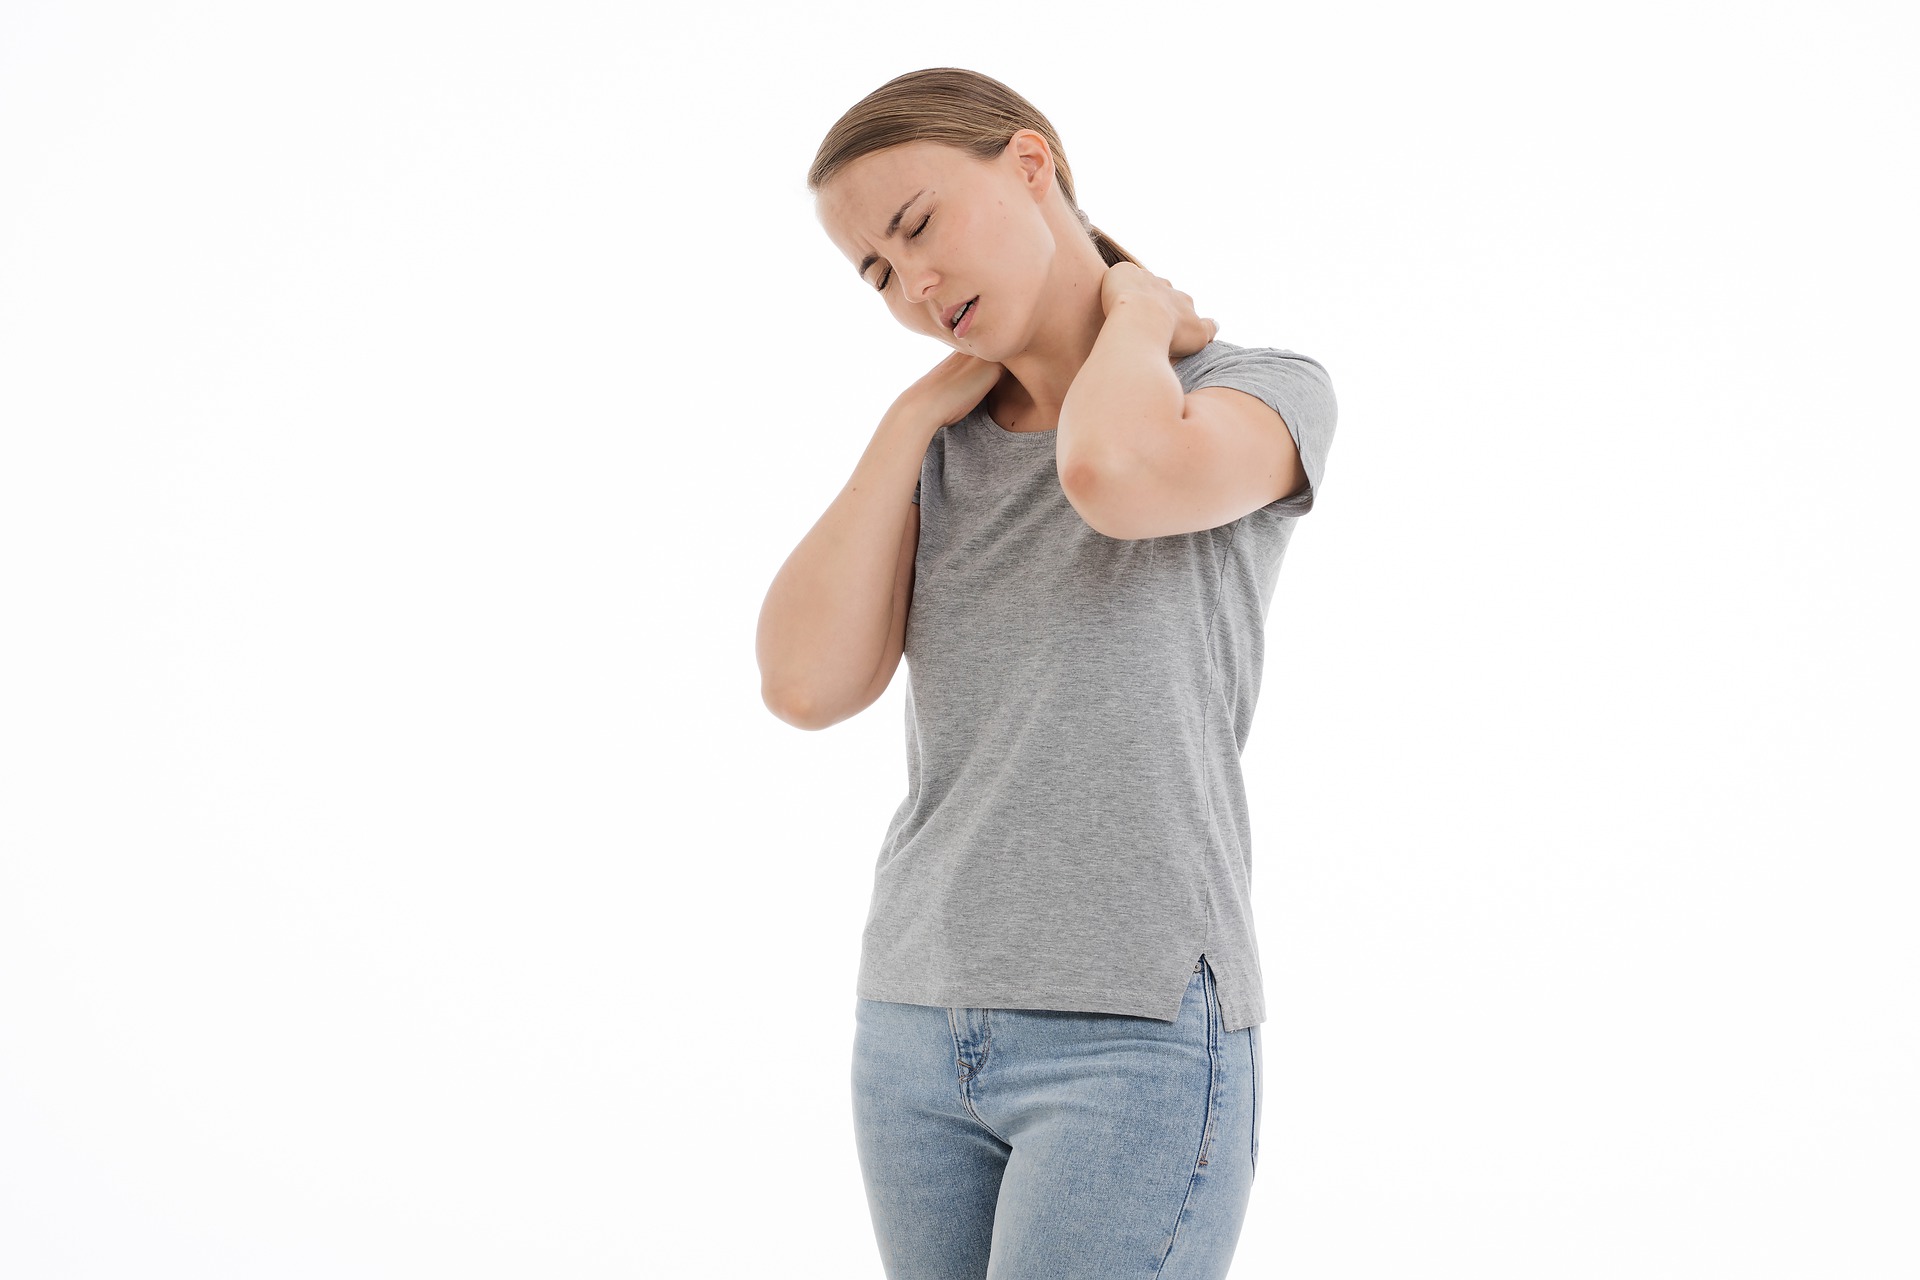 Trik za koji vam treba svega 60 sekundi: Otkočite vrat i smanjite bol